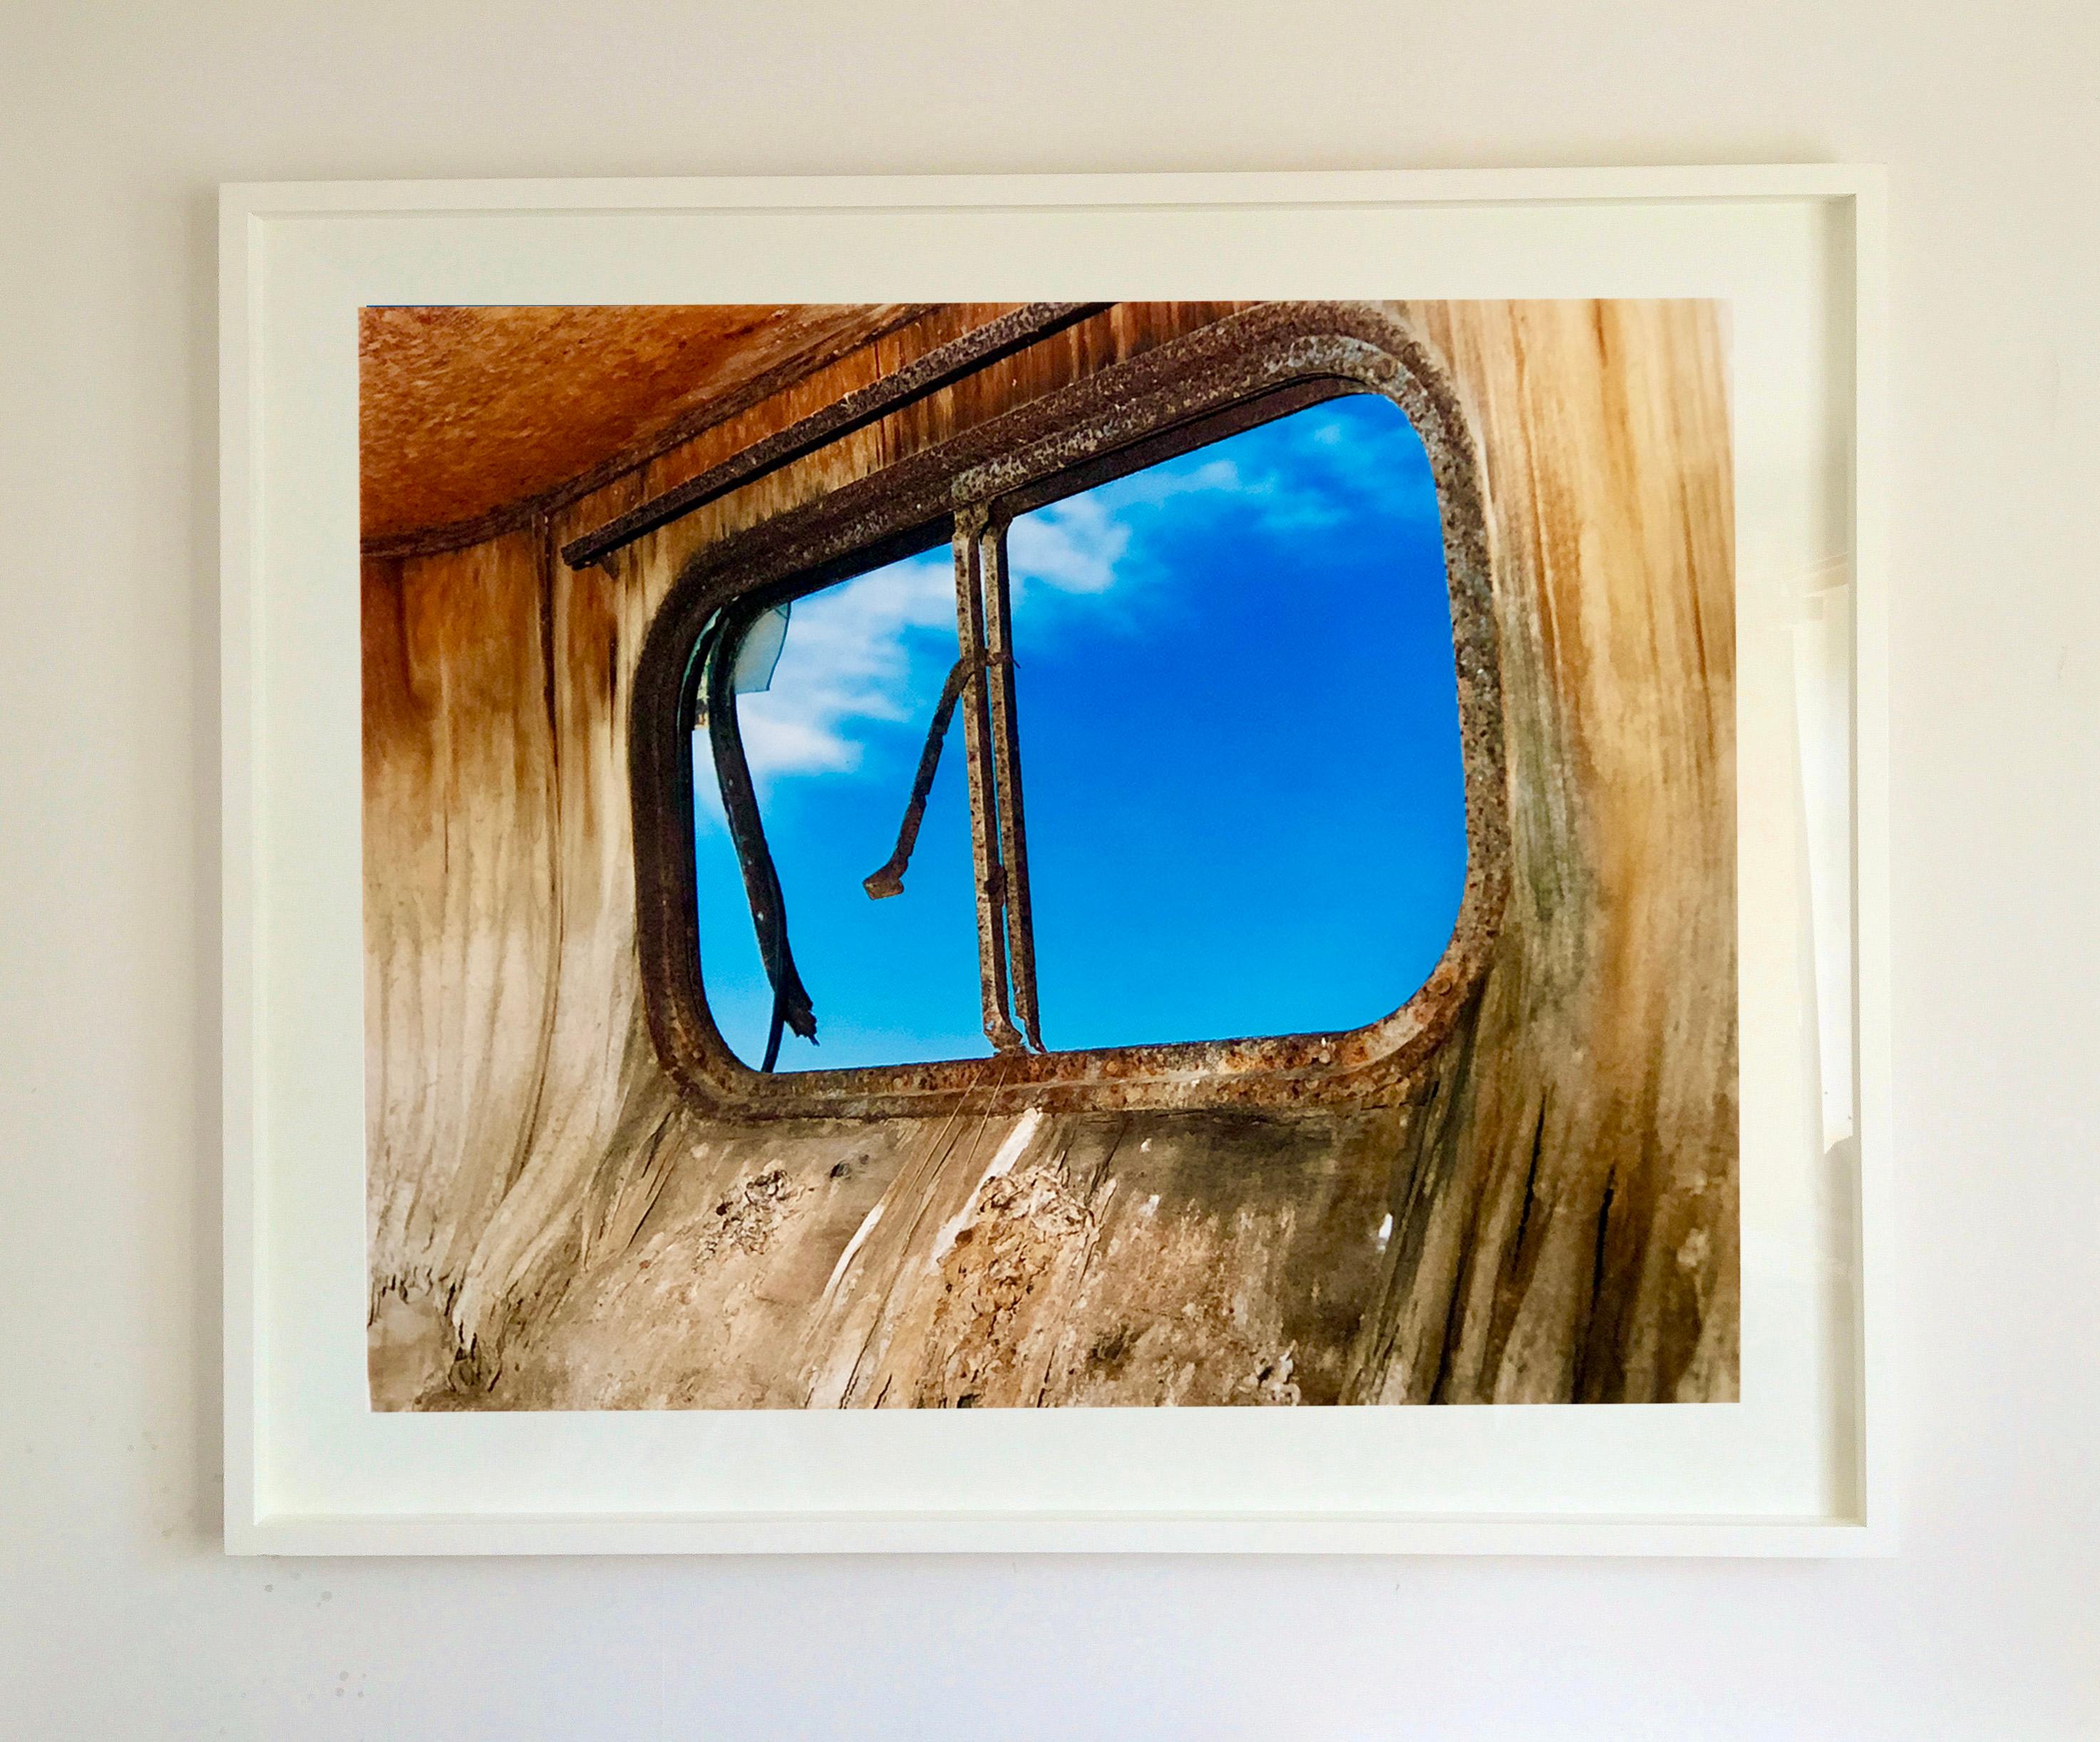 Trailerfenster, Bombay Beach, Salton Sea, Kalifornien (Zeitgenössisch), Print, von Richard Heeps